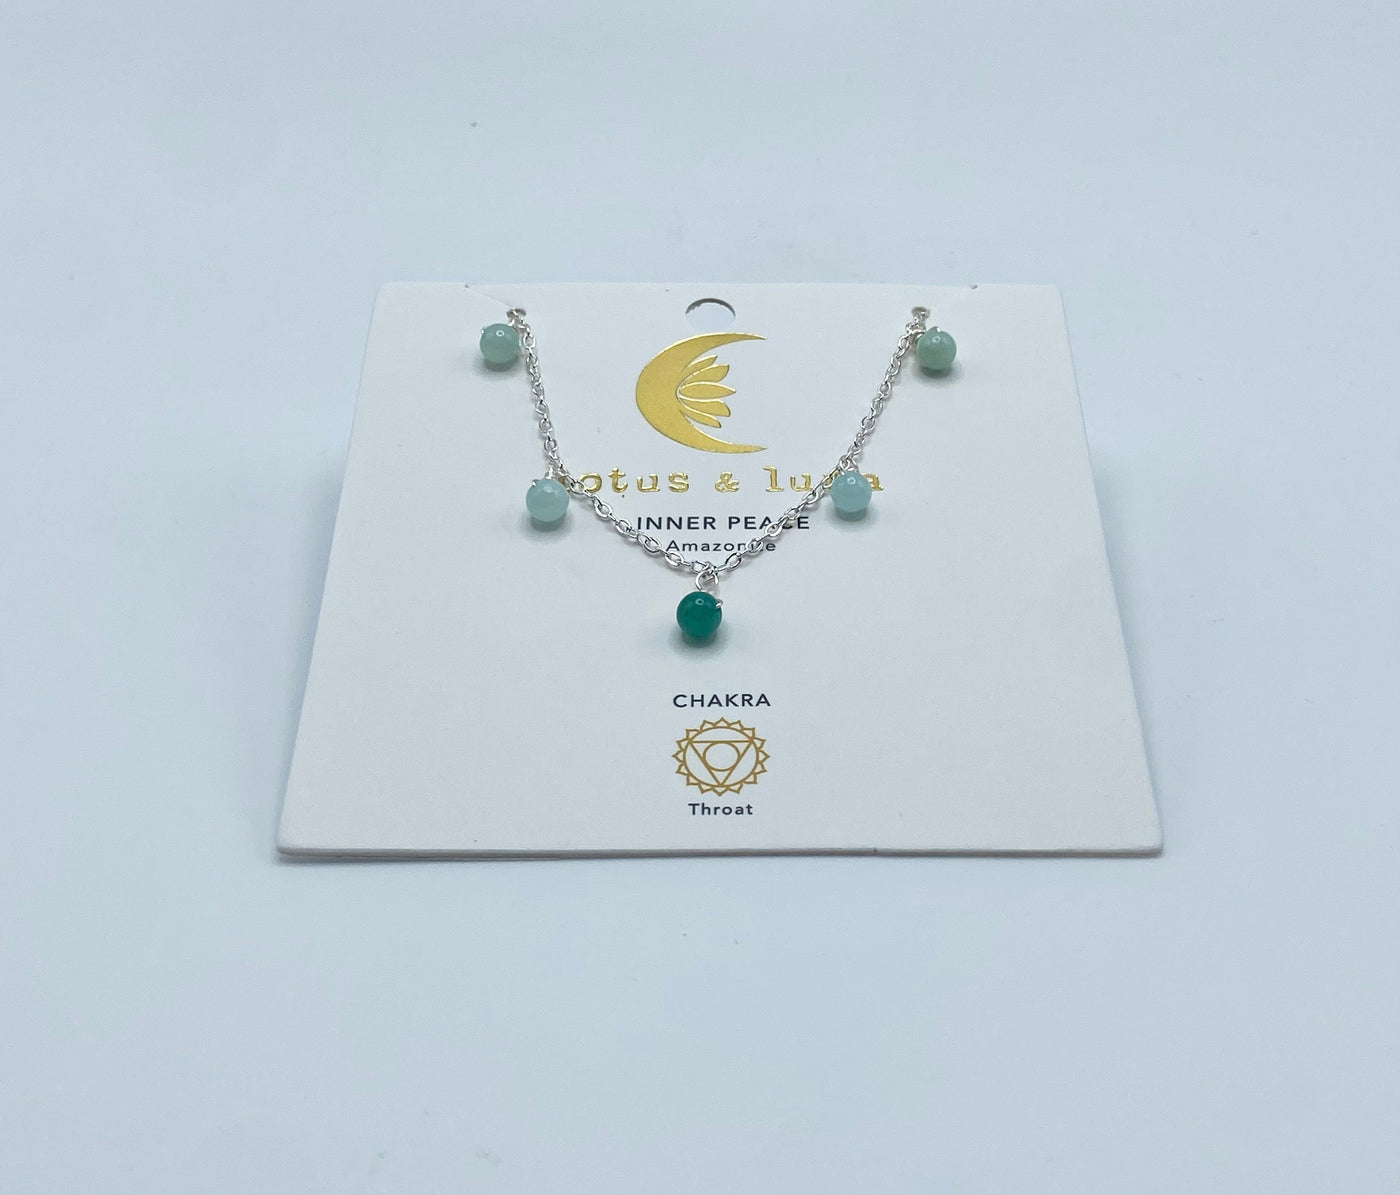 Necklaces By Lotus & Luna